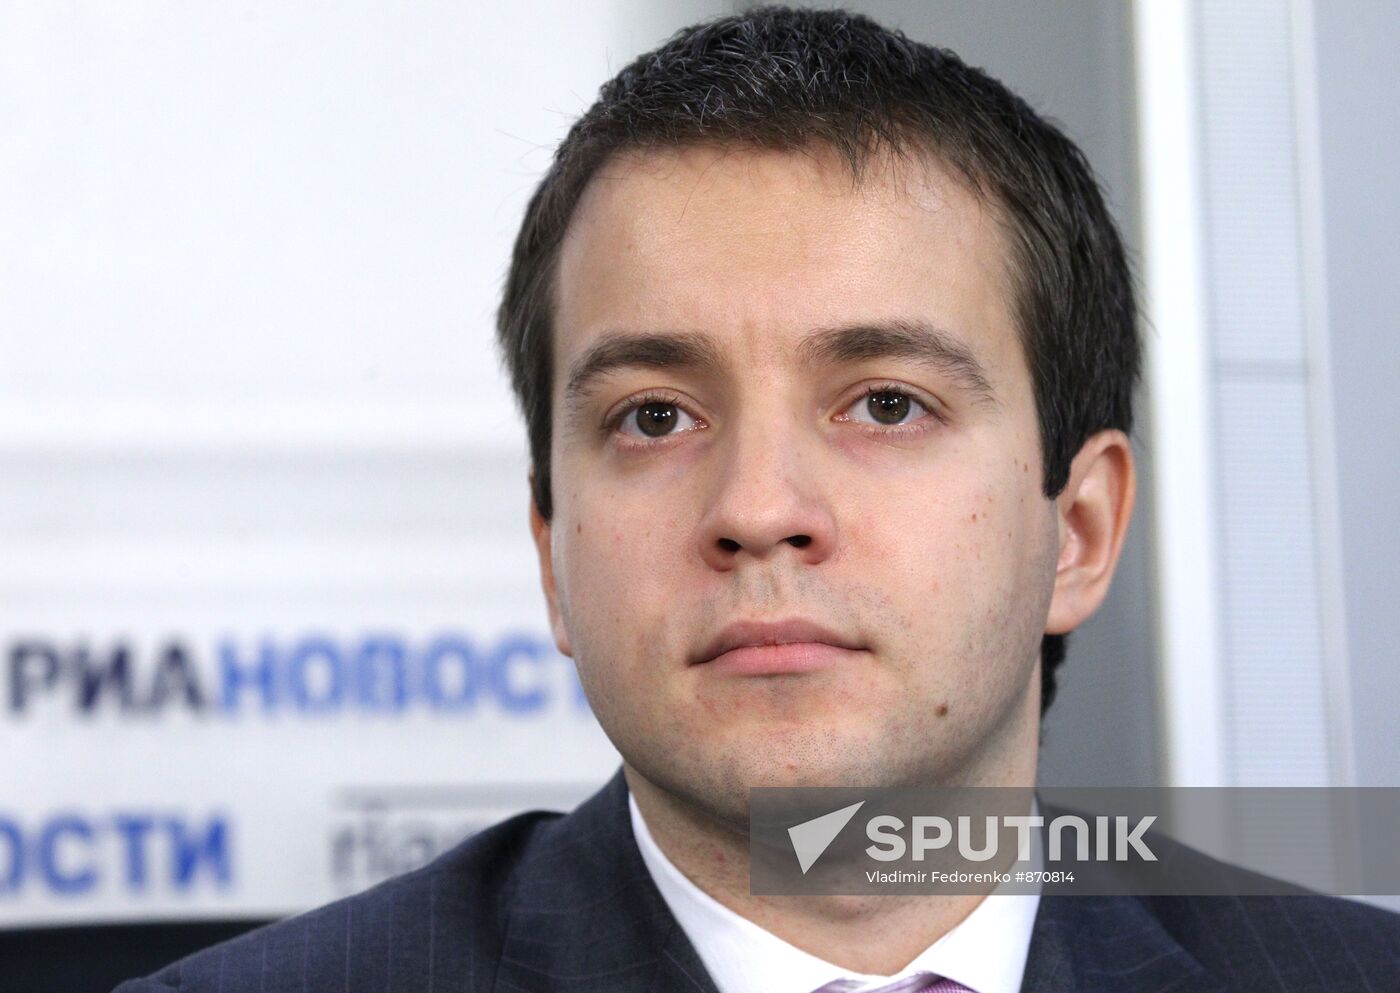 Nikolai Nikiforov at a news confernce at RIA Novosti